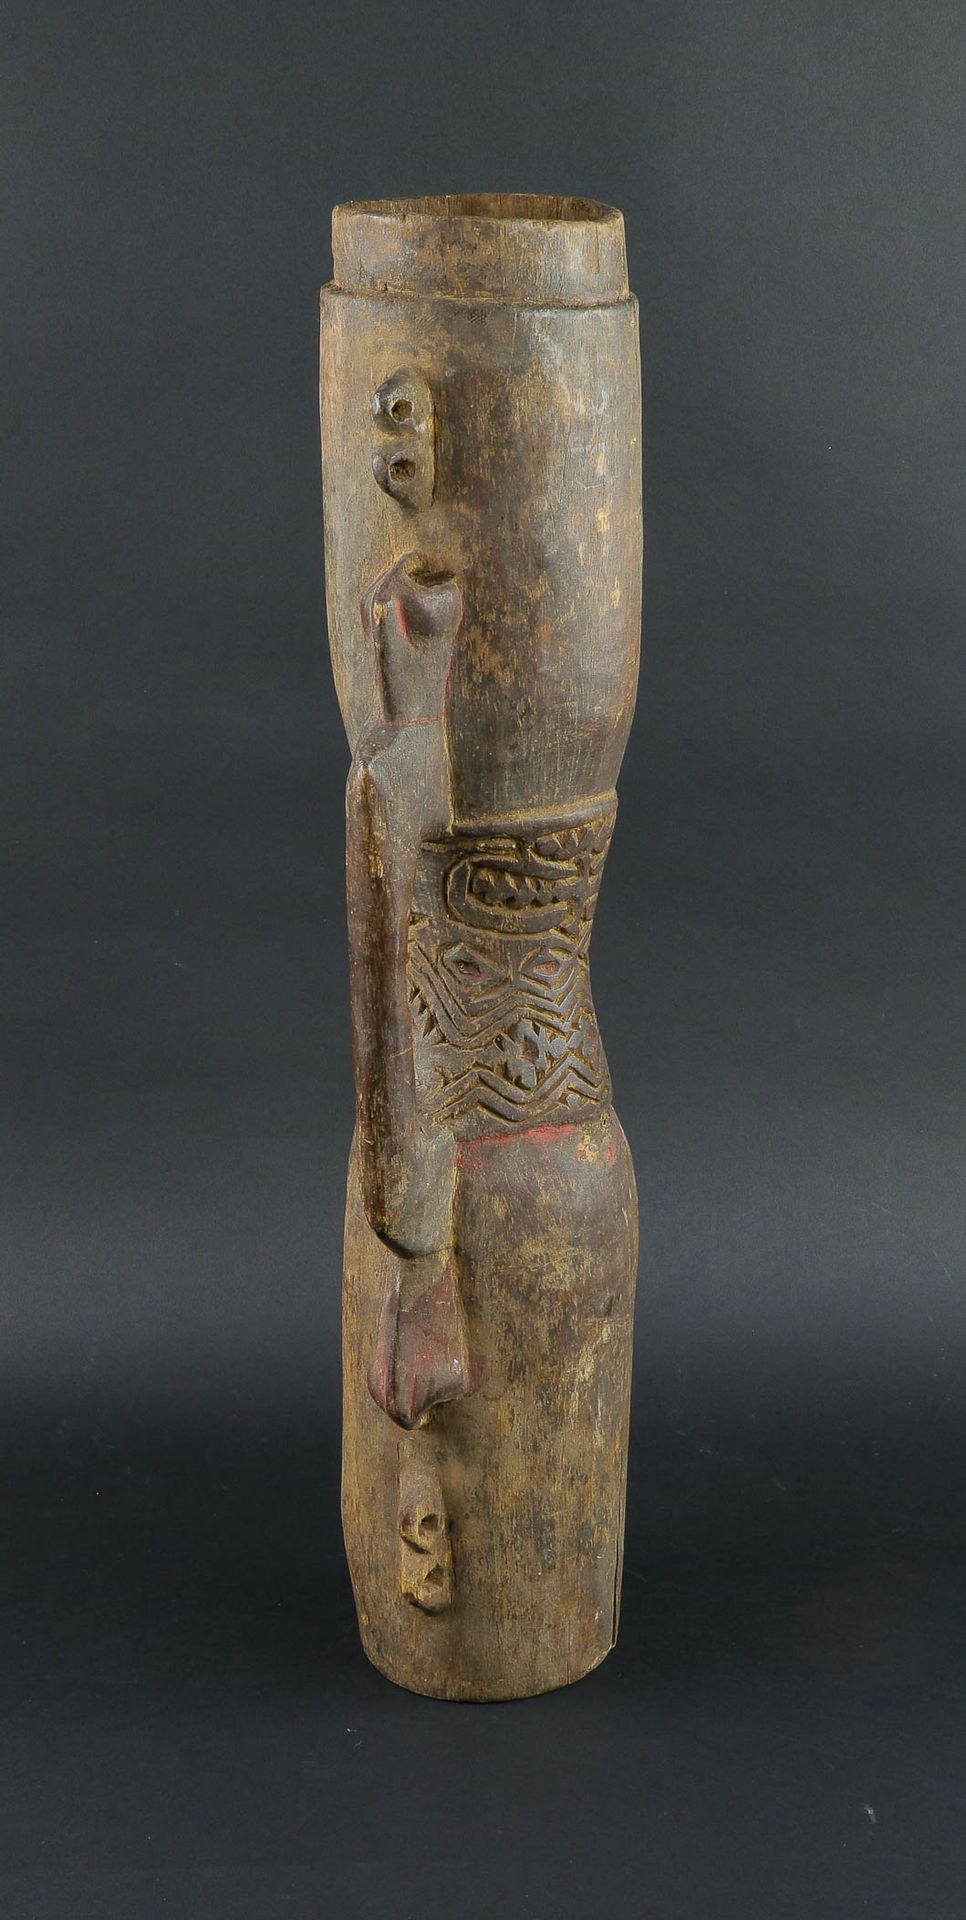 Null 昆都牌礼鼓由木头制成，有古老的铜锈和使用痕迹。手柄上雕刻着一个祖先的形象。巴布亚新几内亚拉穆河地区，20世纪上半叶。高：61厘米。出处：2005年1月&hellip;